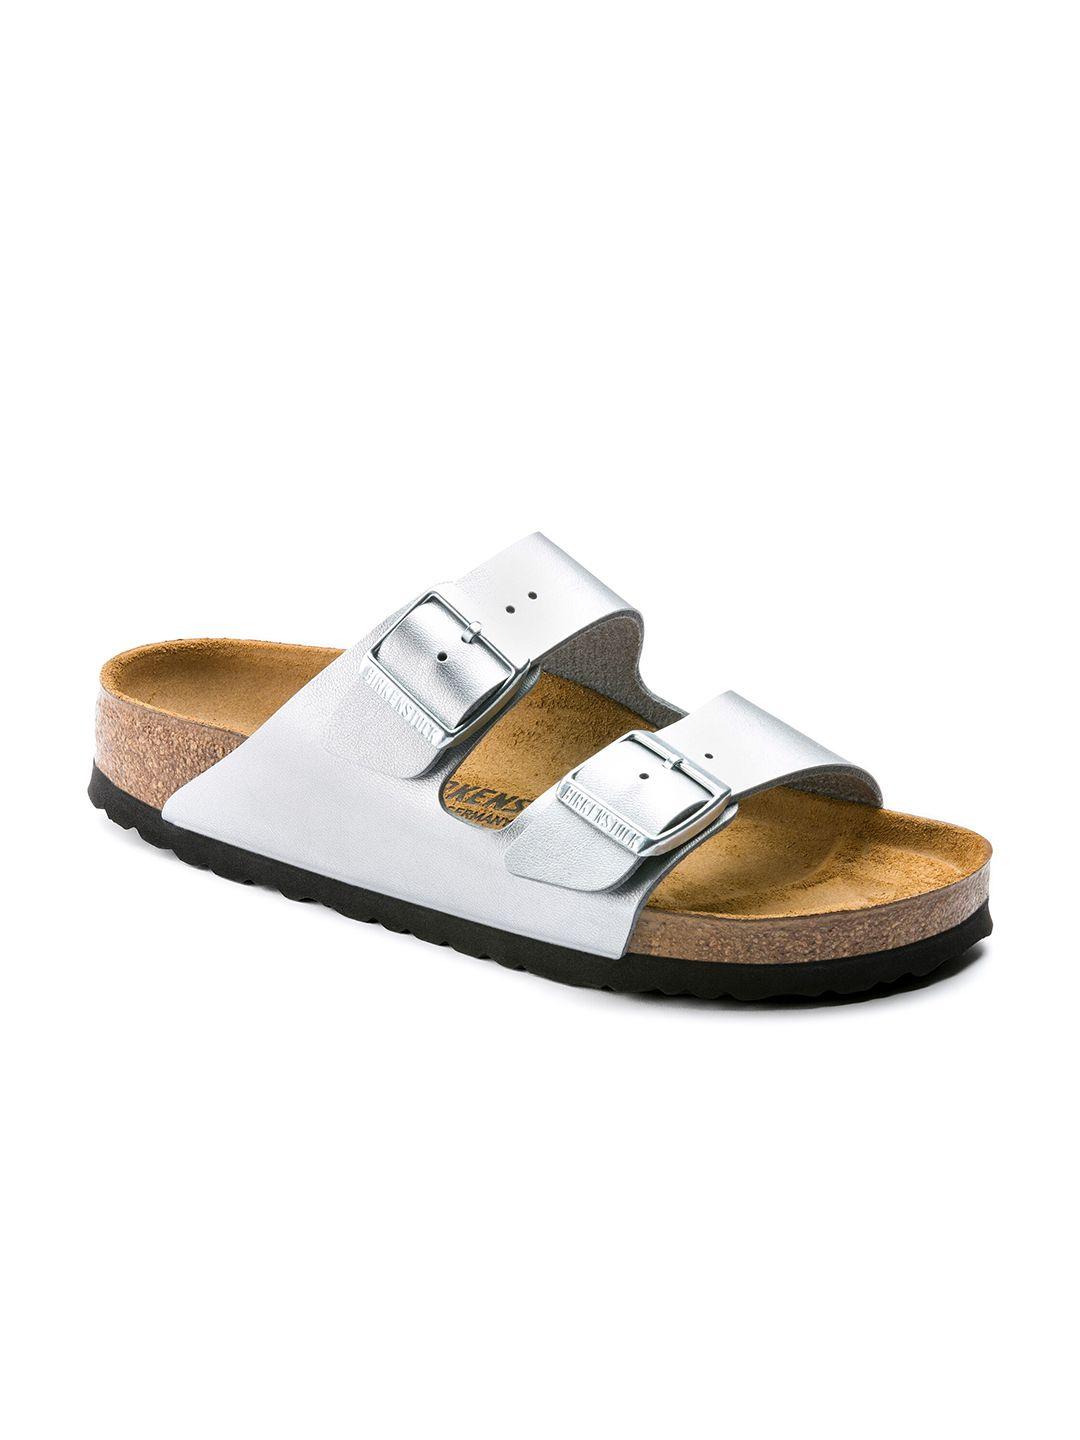 birkenstock unisex silver-toned comfort sandals